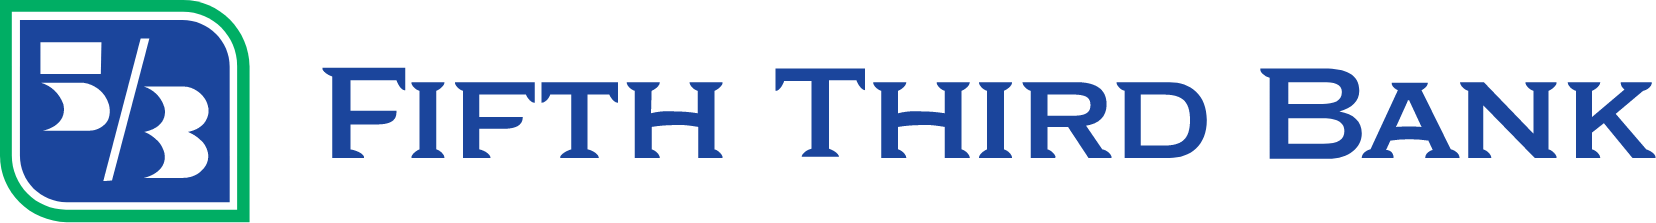 Fifth Third Bank
 logo large (transparent PNG)